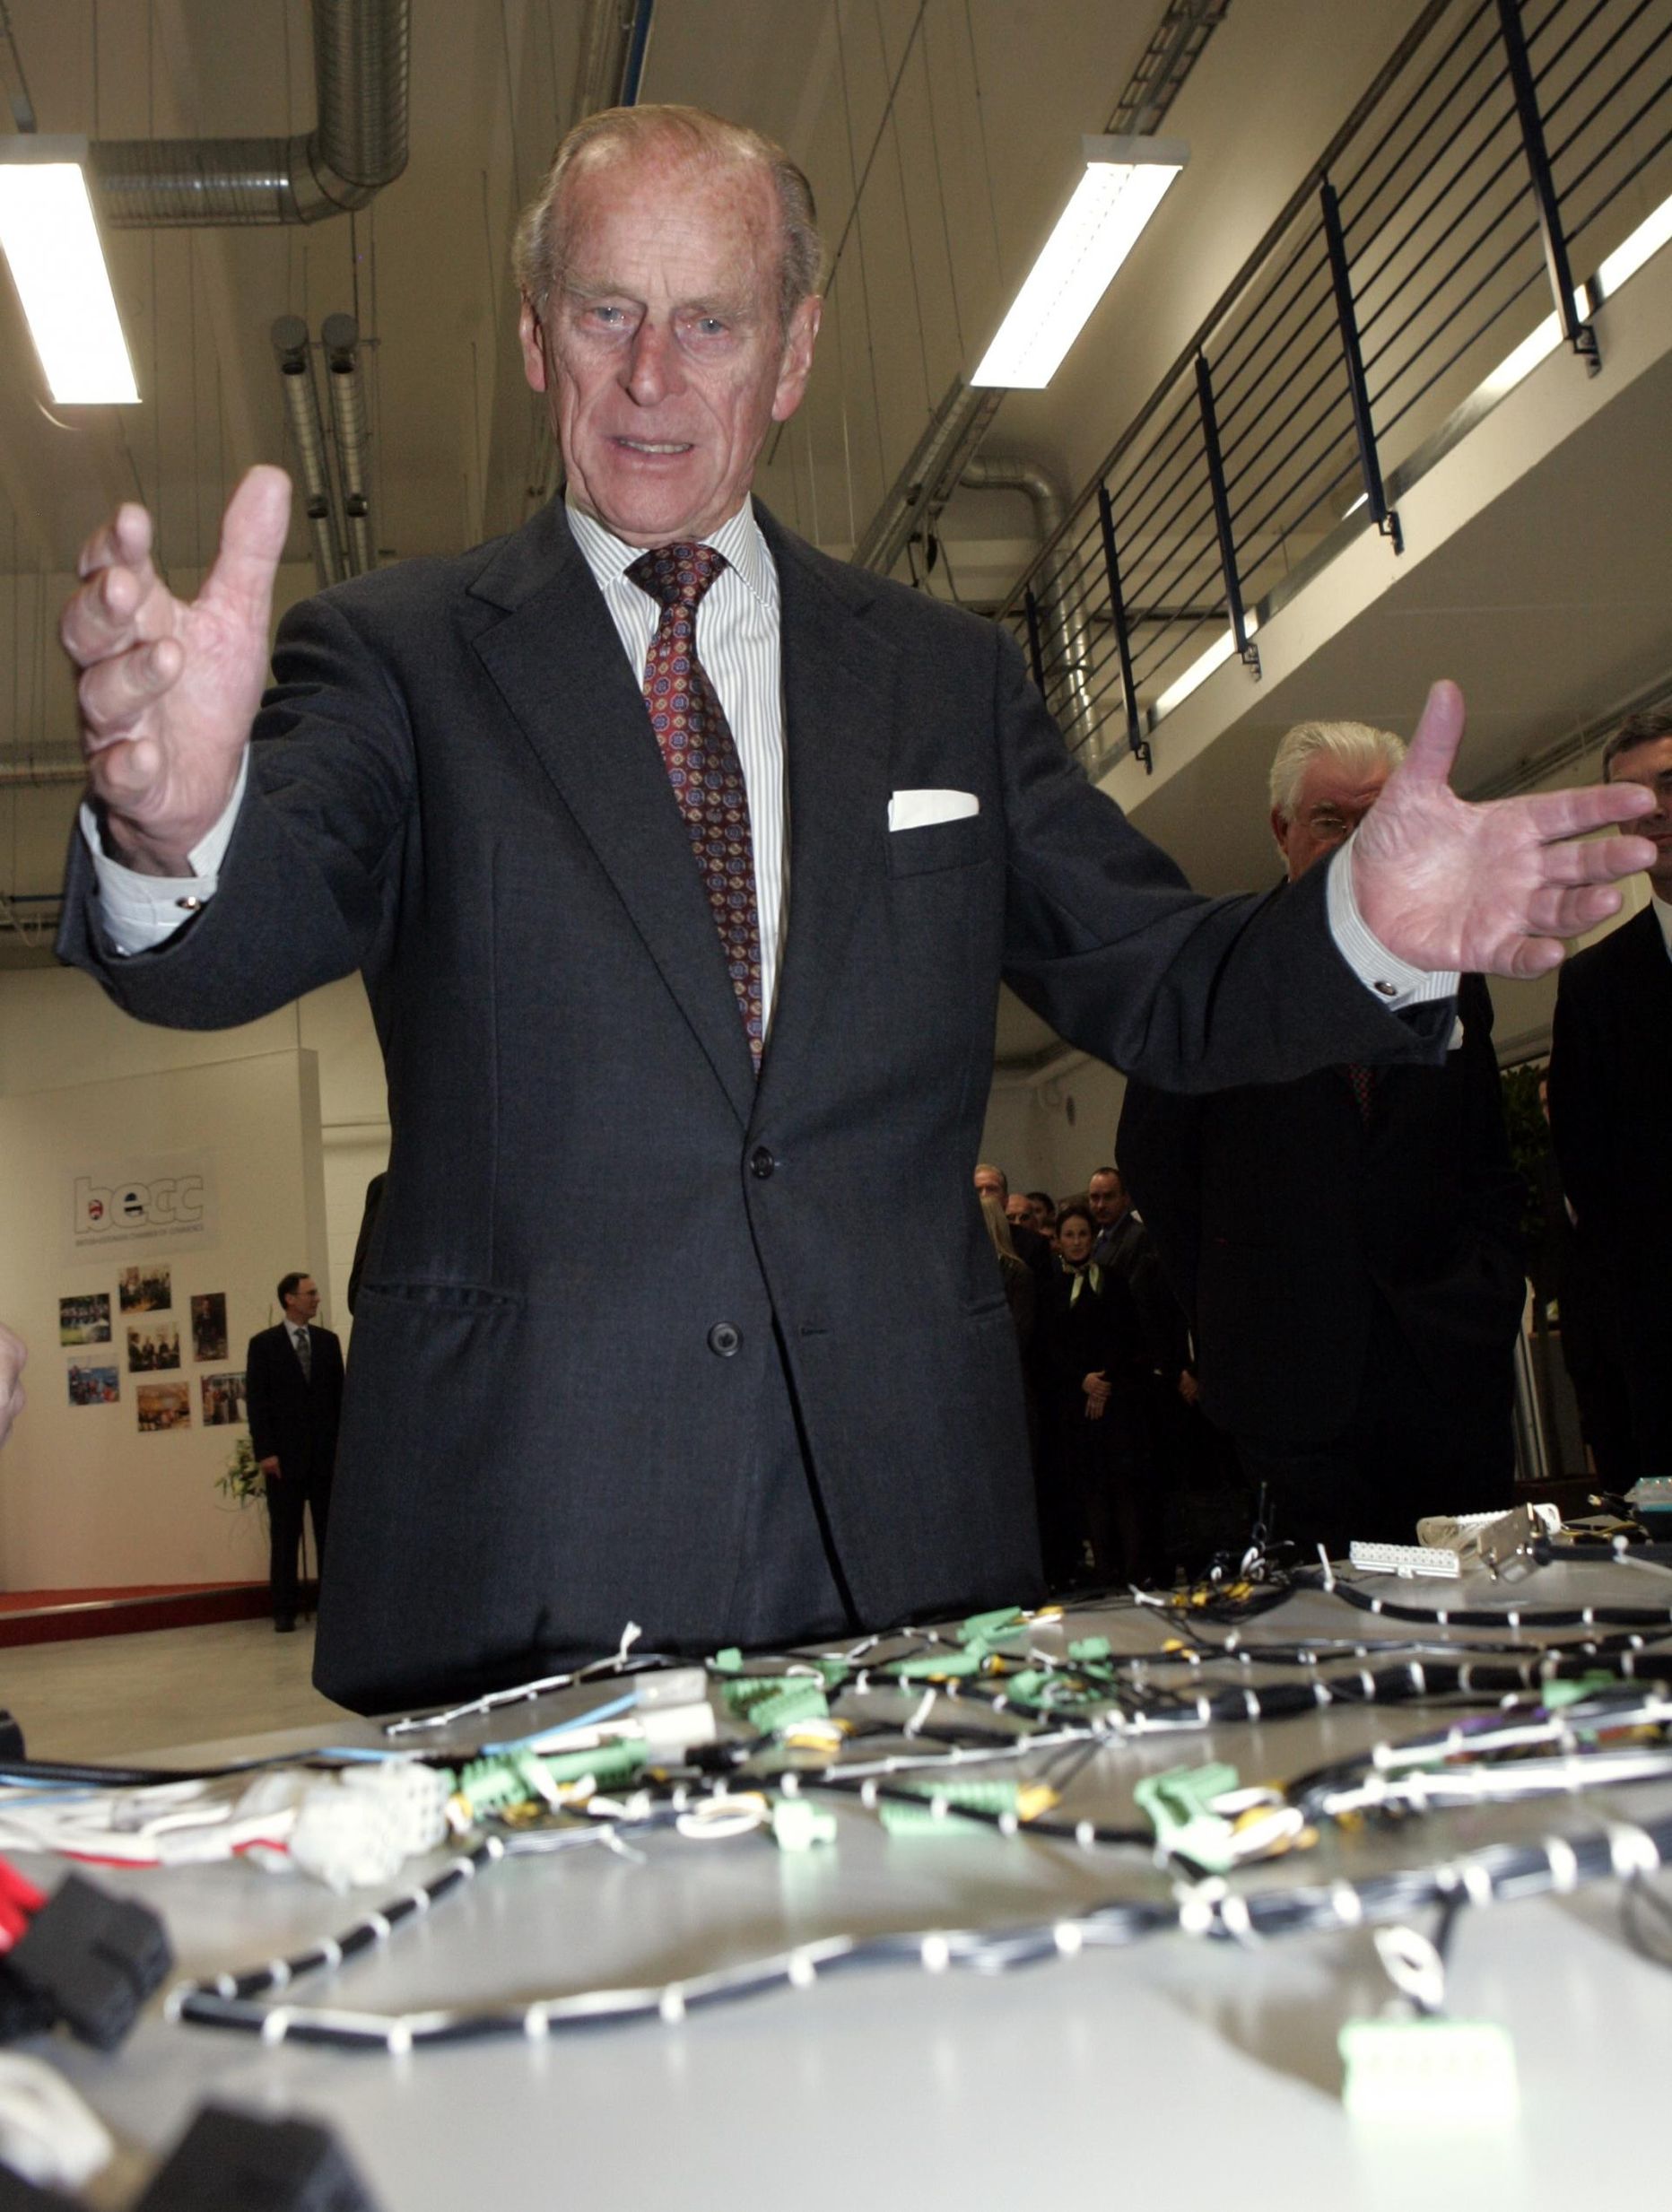 «Ma kuulutan selle asja avatuks, ükskõik mis see ka oleks!». Suur­britannia kuninganna Elizabeth II visiit Tallinna 2006. aasta oktoobris. Edinburghi hertsog prints Philip avas Tallinnas tehase.